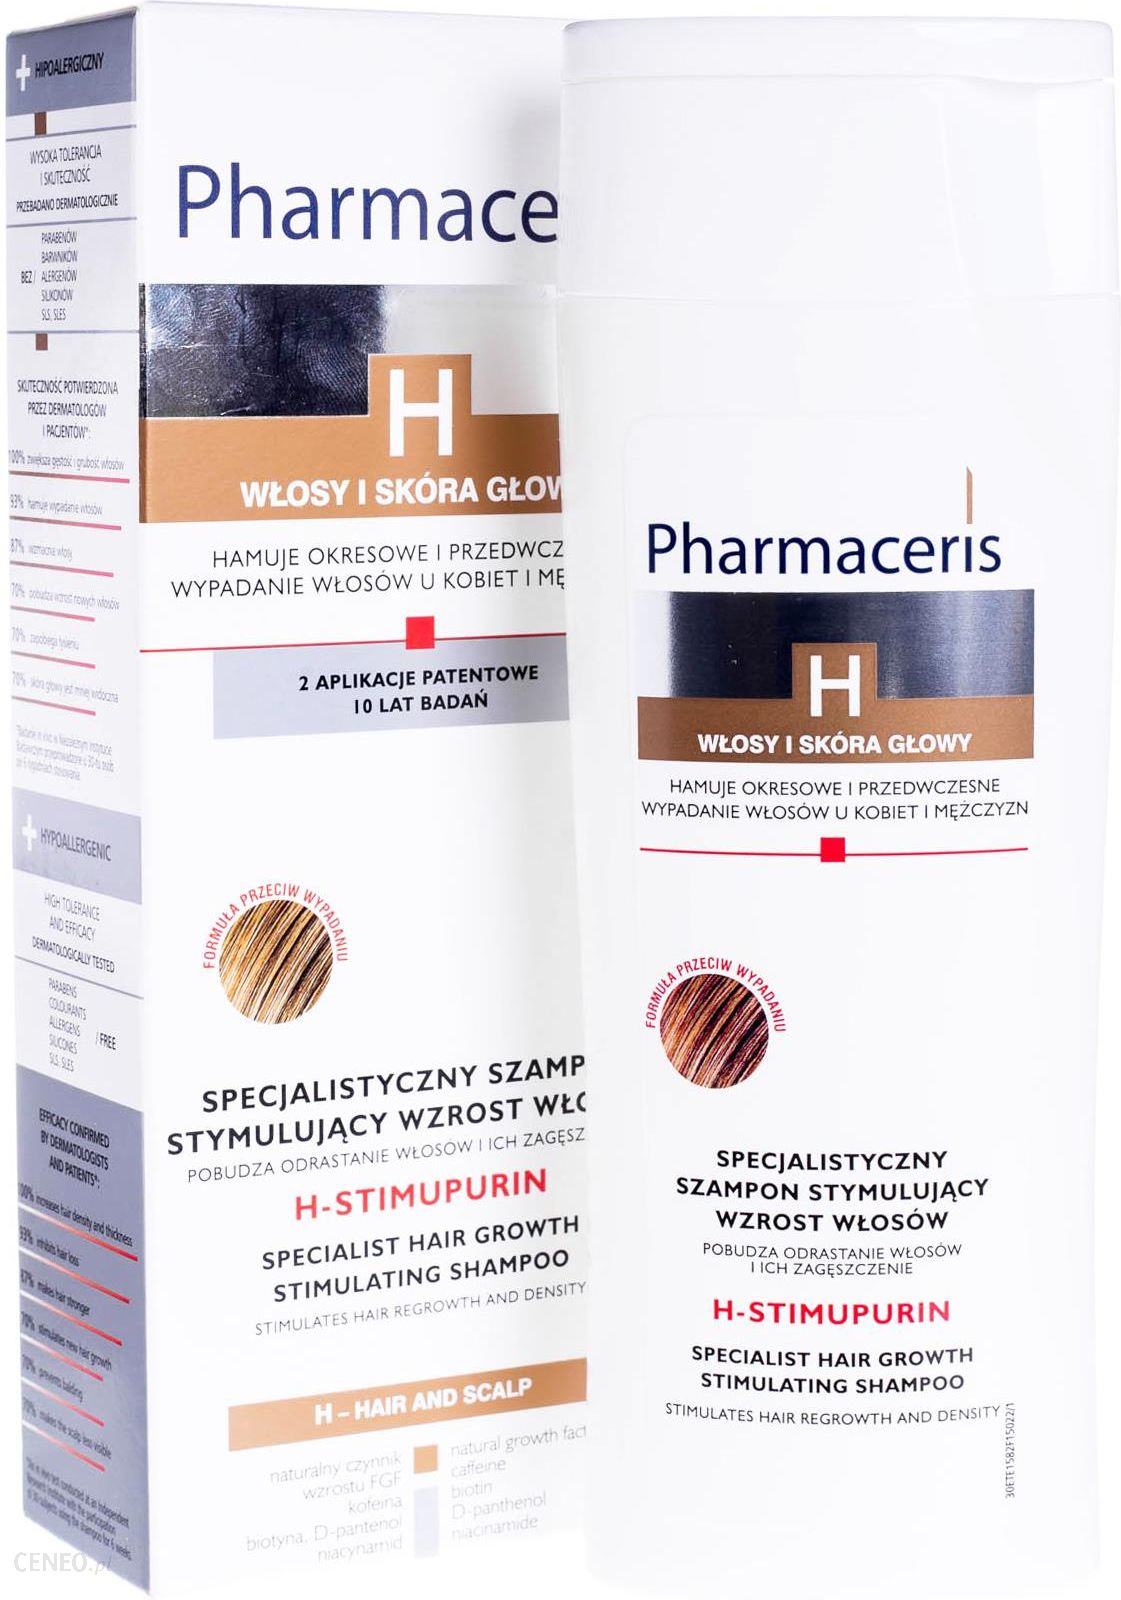 miceralny szampon pharmaceris h ceneo